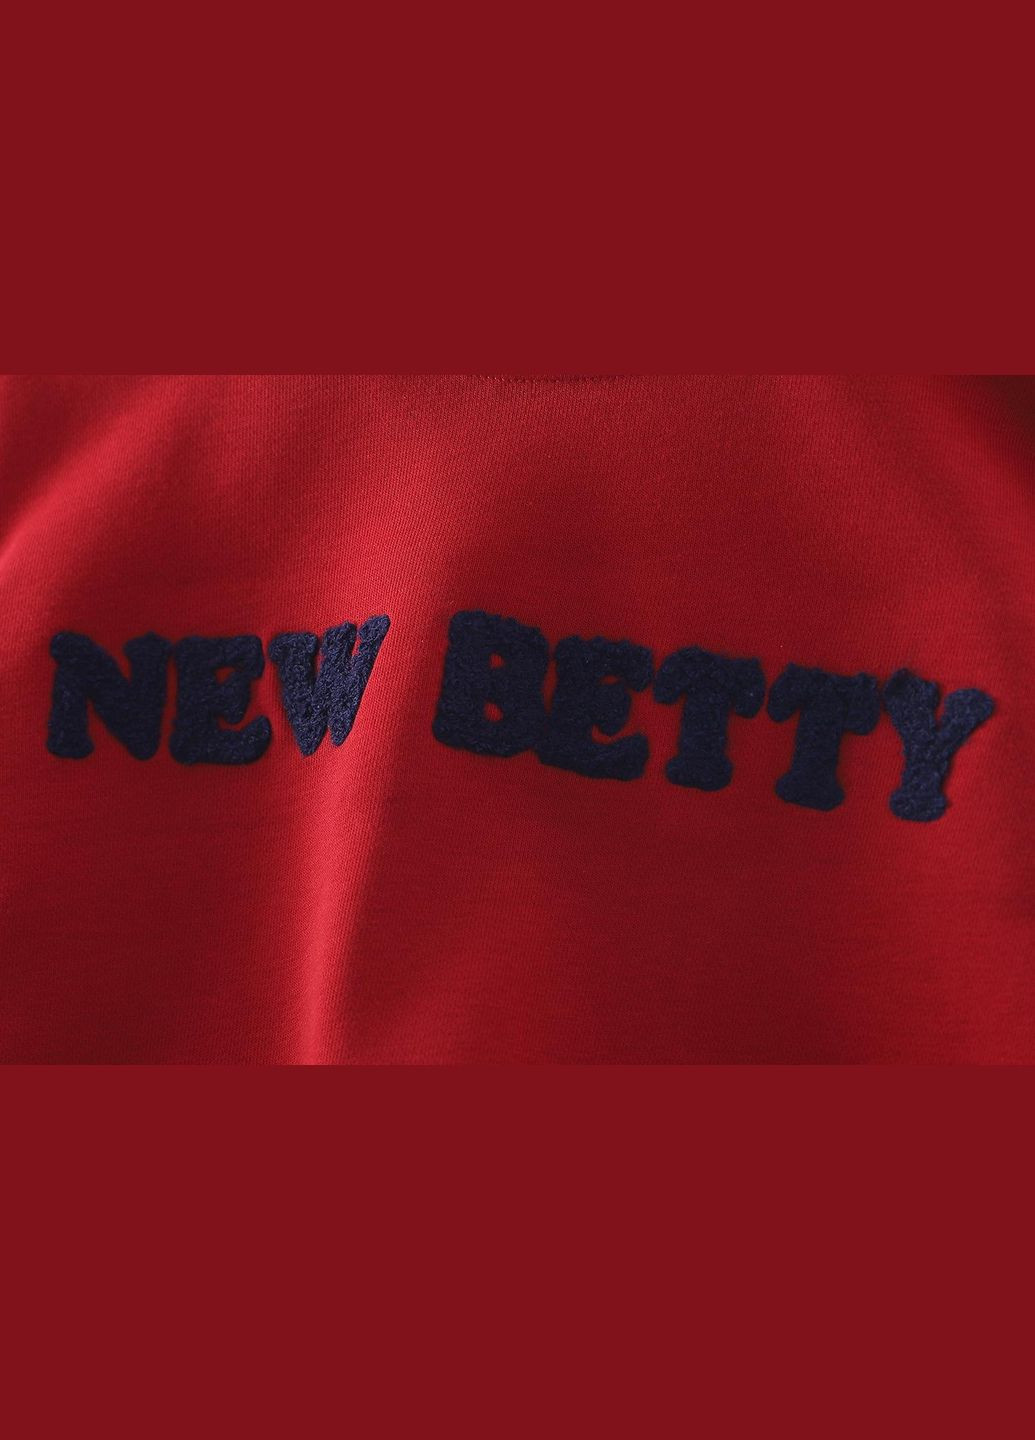 No Brand світшот на хлопчика new betty арт. 7134 червоний темно-червоний